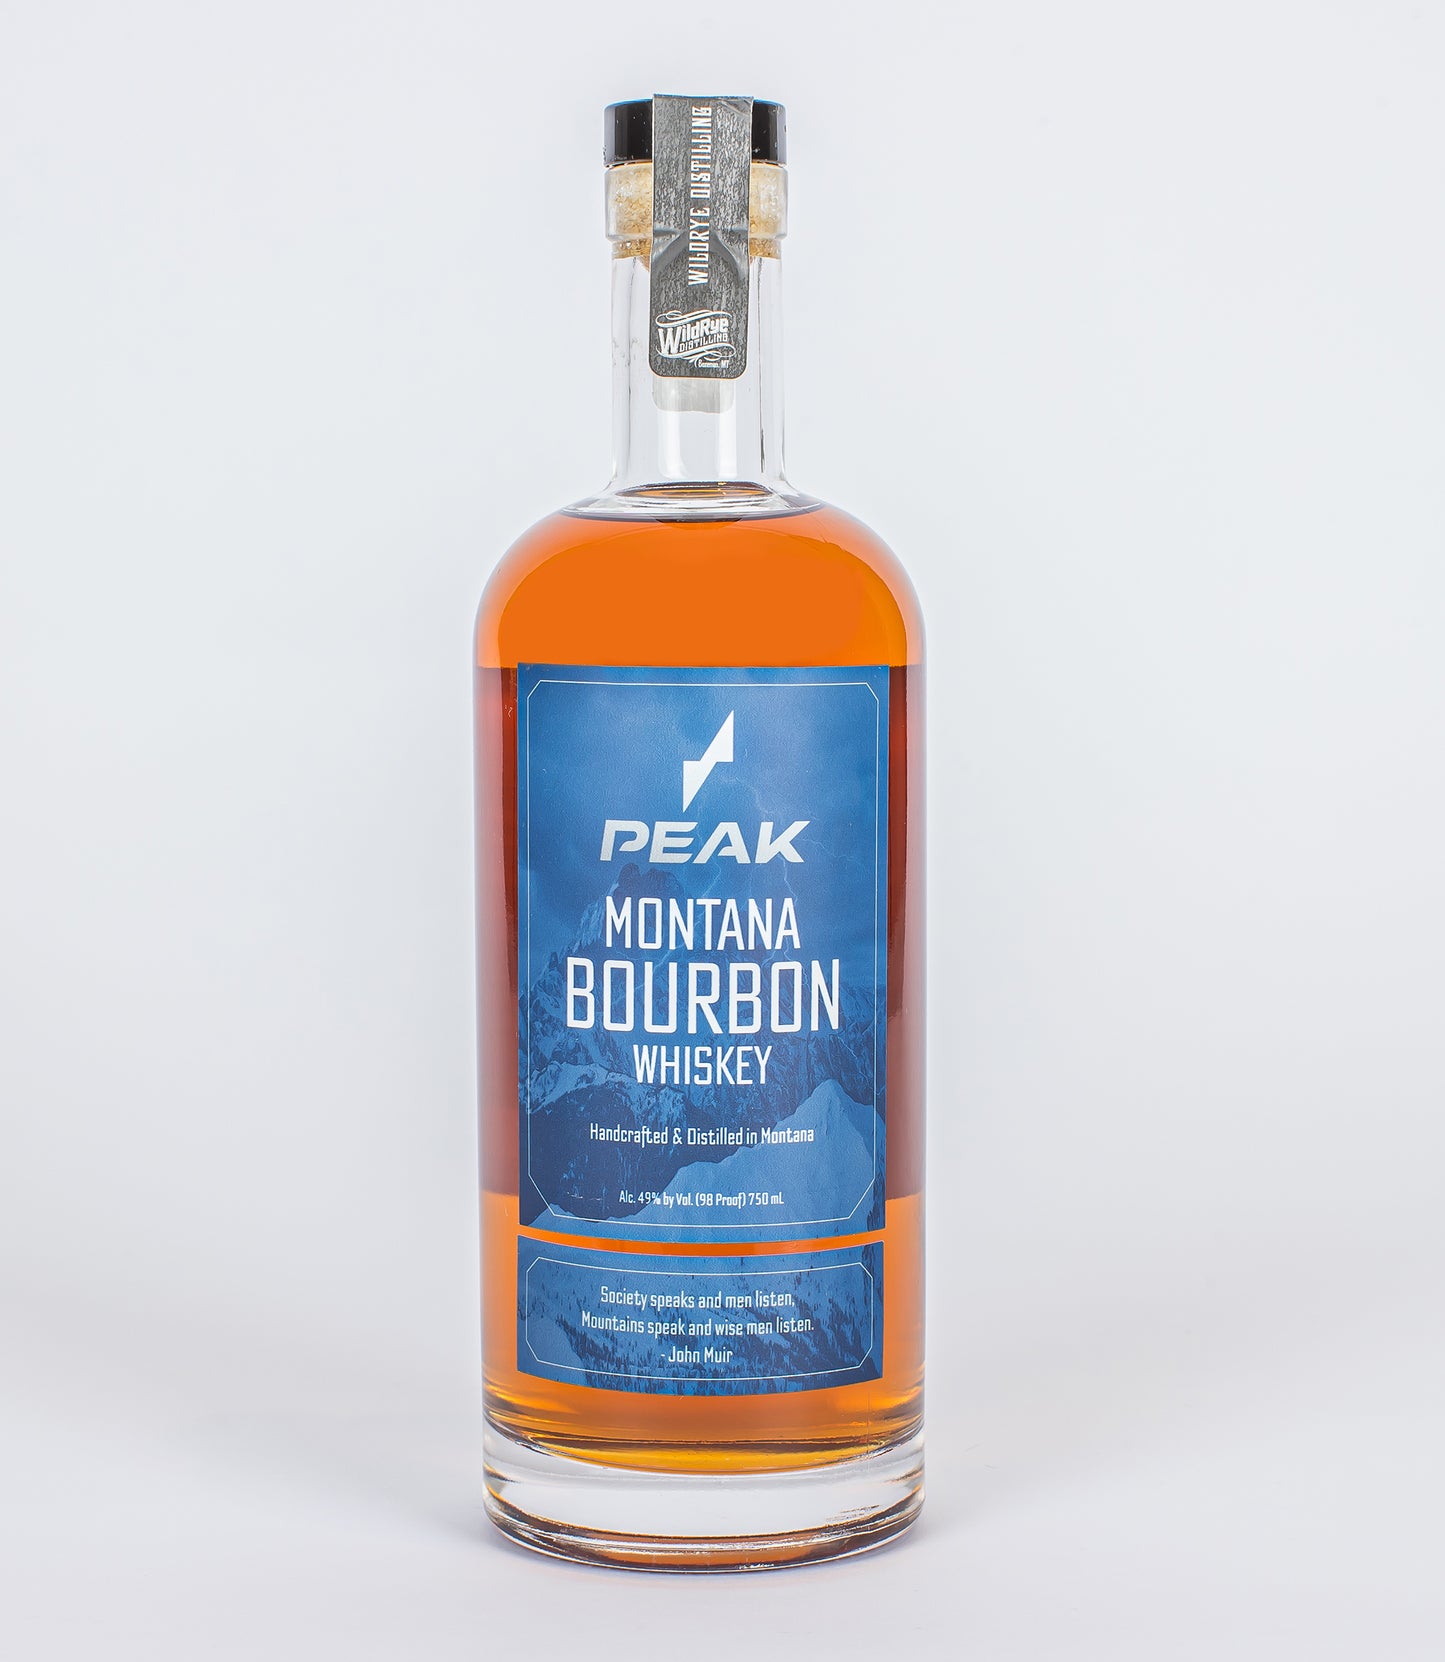 Peak Montana Bourbon Whiskey